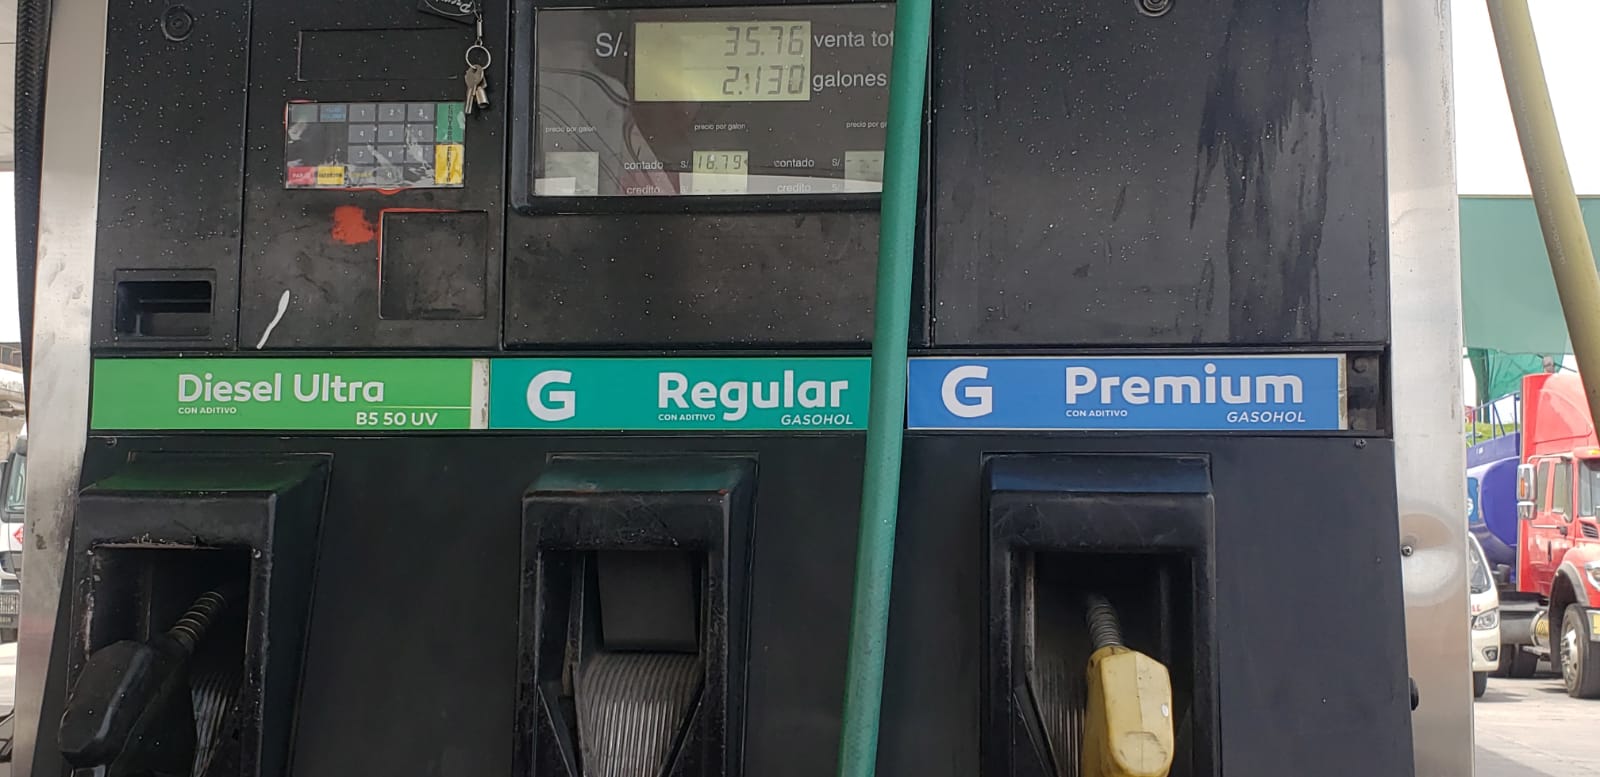 ¿Por qué los grifos solo están vendiendo dos tipos de gasolinas o gasoholes?